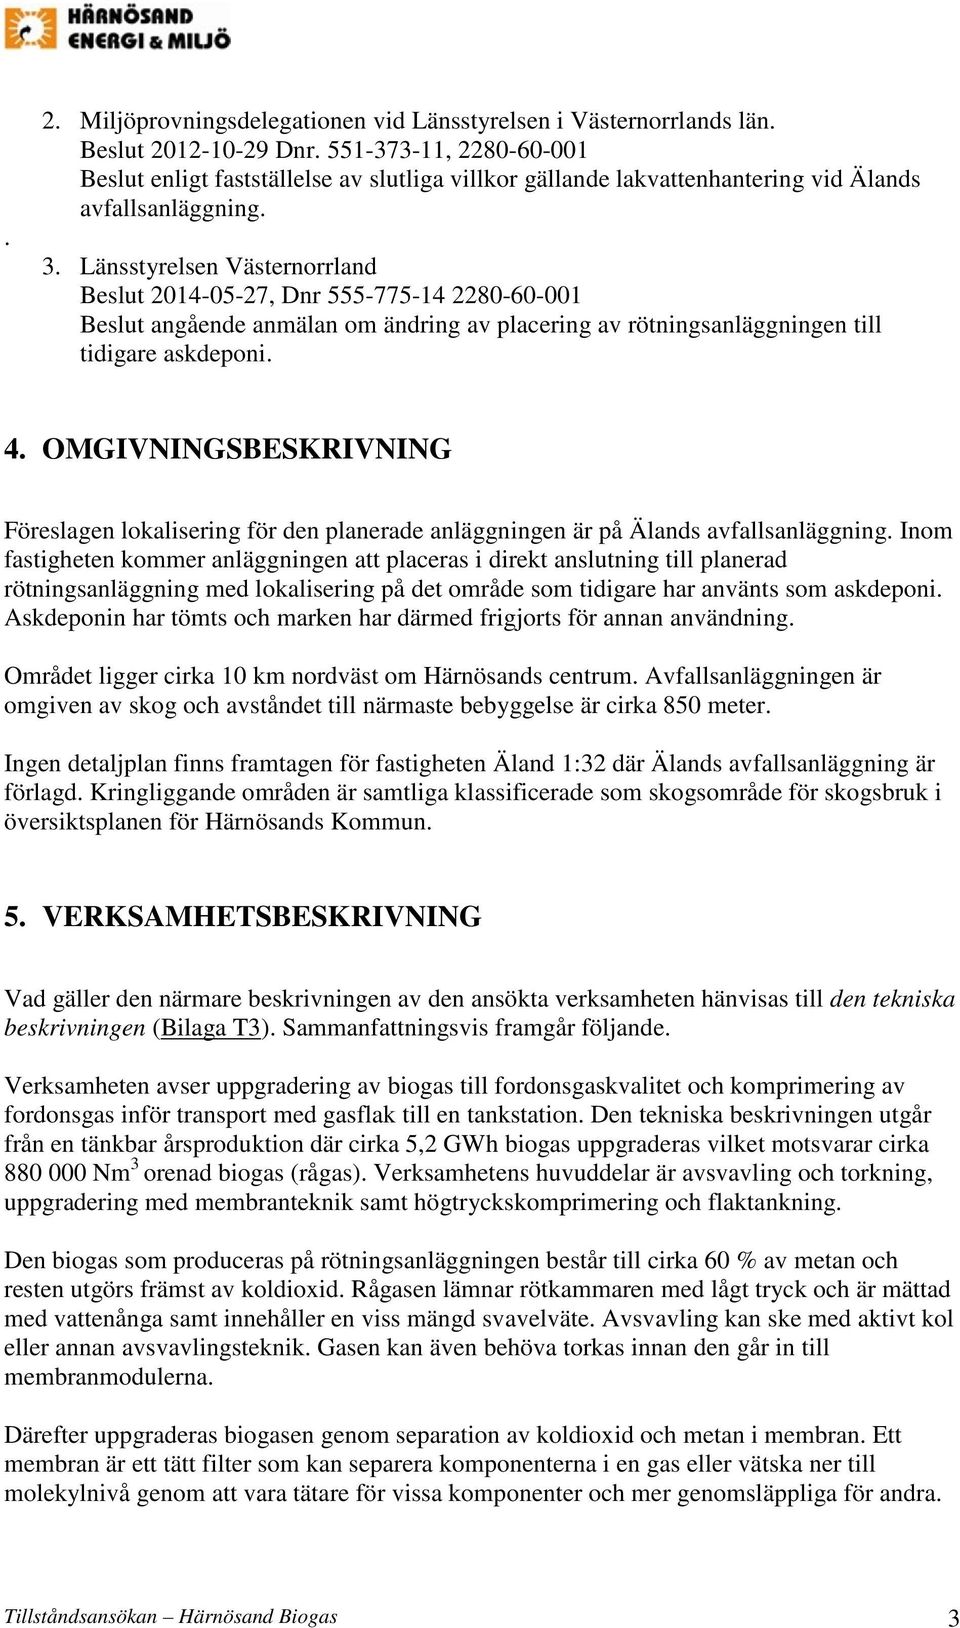 Länsstyrelsen Västernorrland Beslut 2014-05-27, Dnr 555-775-14 2280-60-001 Beslut angående anmälan om ändring av placering av rötningsanläggningen till tidigare askdeponi. 4.